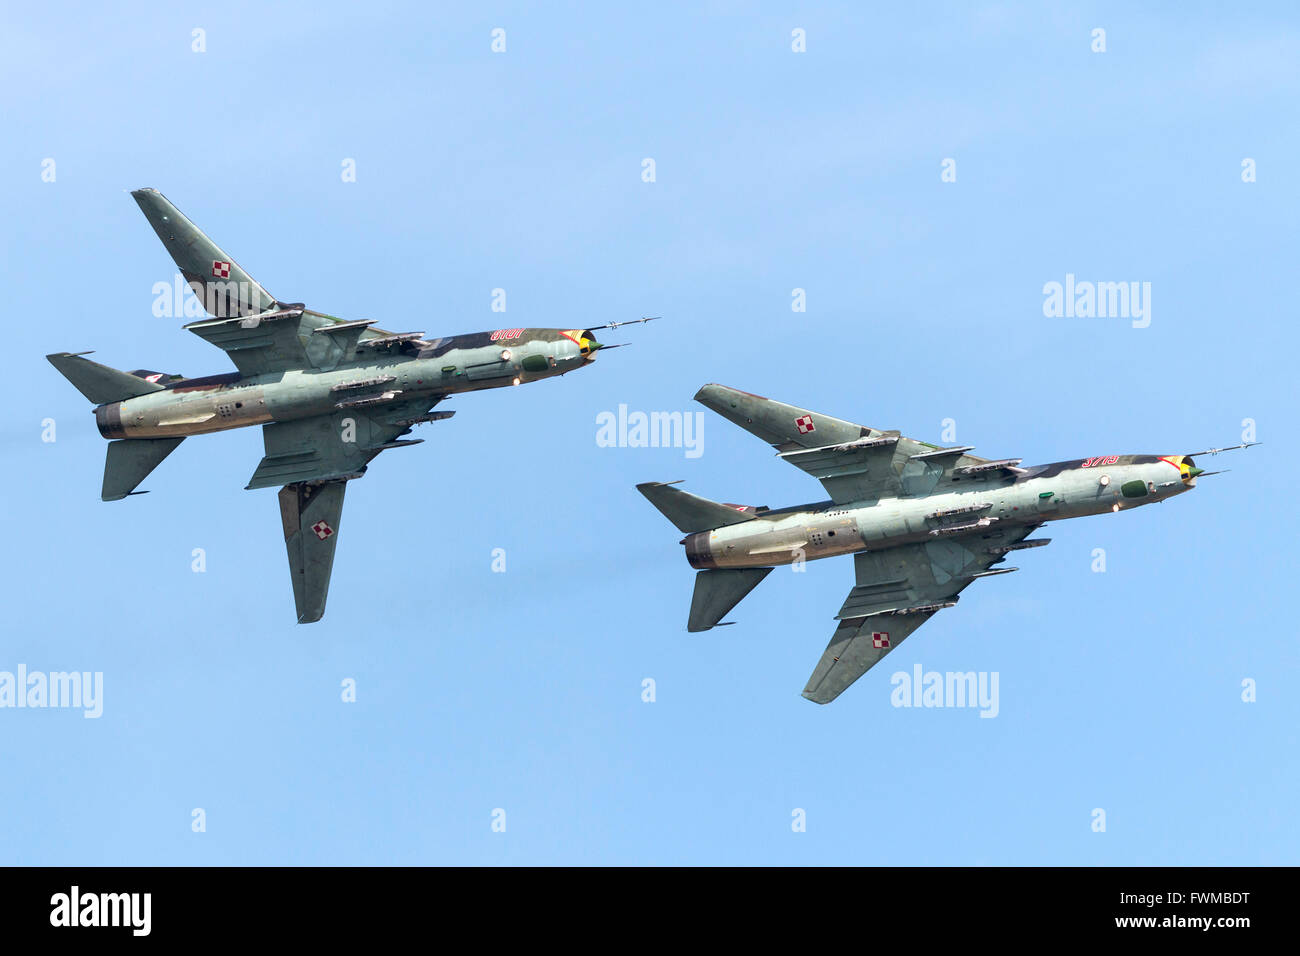 Armée de l'Air polonaise Sukhoi Su-22 aéronefs volant en formation d'attaque. Banque D'Images